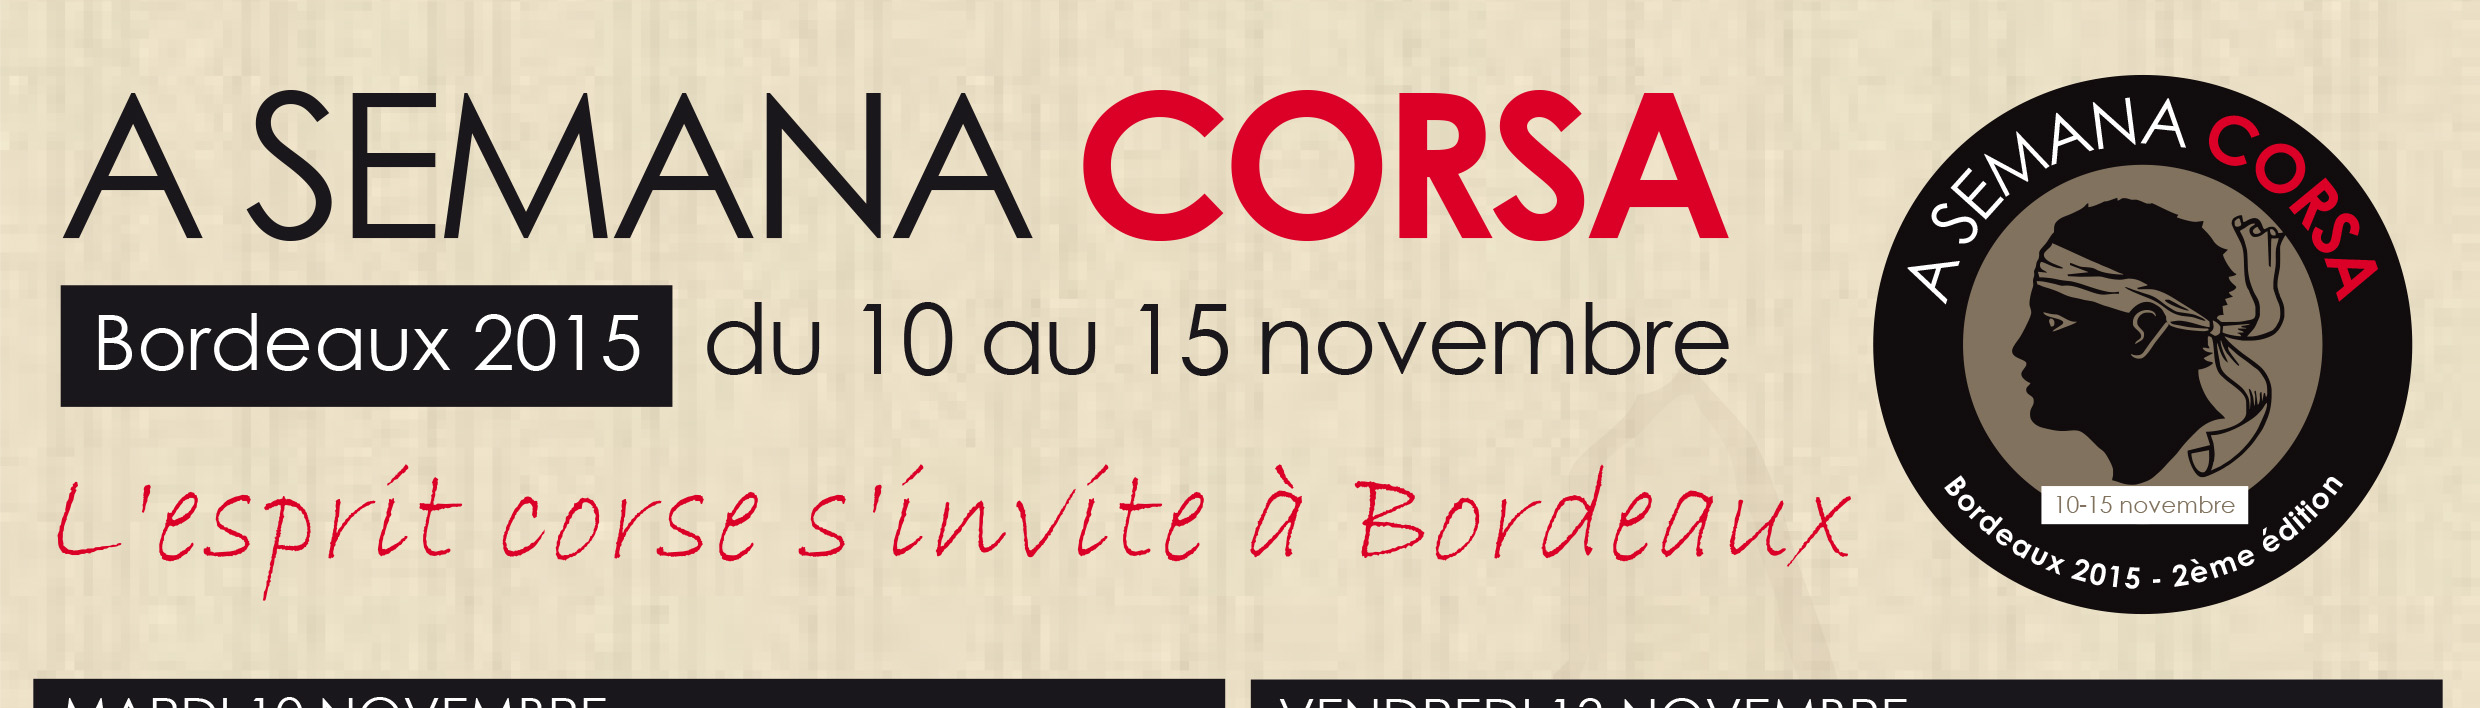 L'esprit corse s'invite à Bordeaux du 10 au 15 novembre 